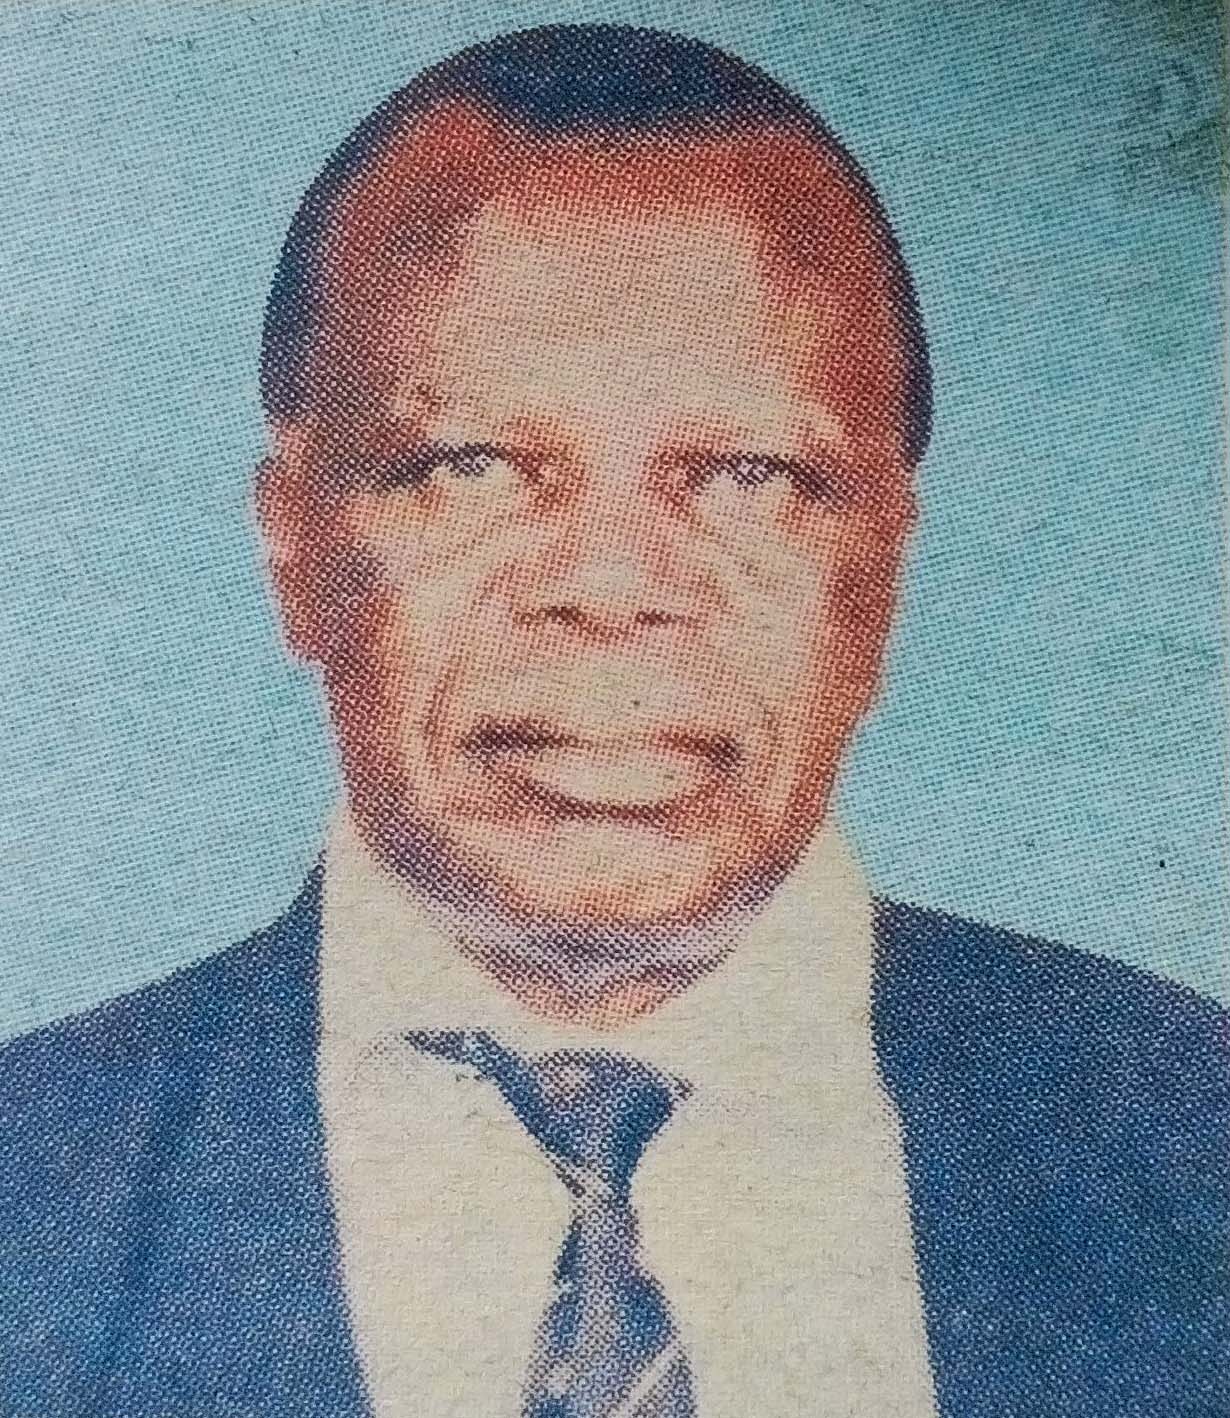 Obituary Image of Prof. Ochieng Okelo